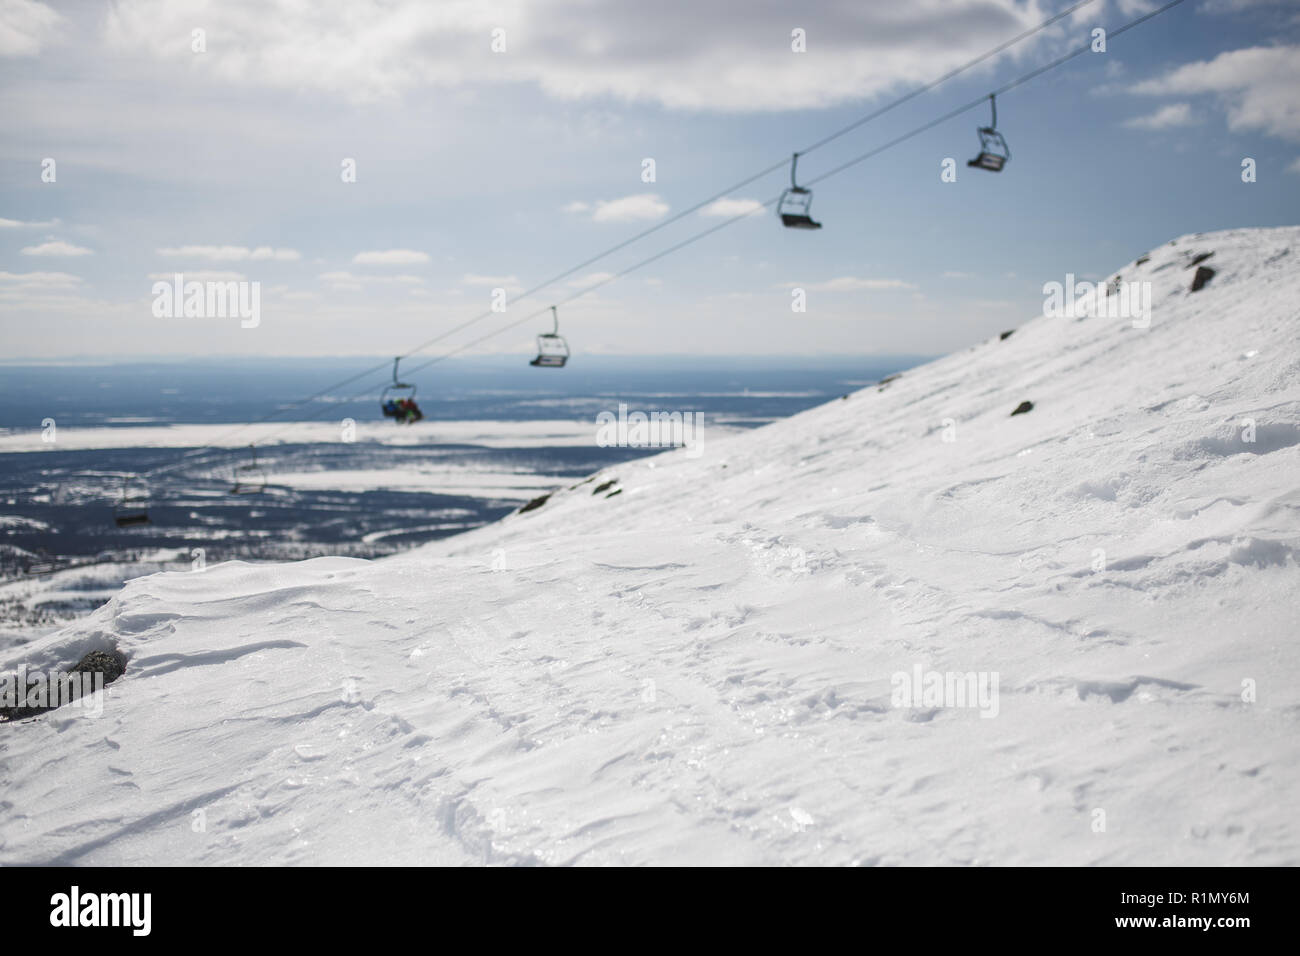 Glänzend Schnee mit unscharfen Ski-lift Cable Car und Gebirge. Kopieren Sie Platz. Stockfoto